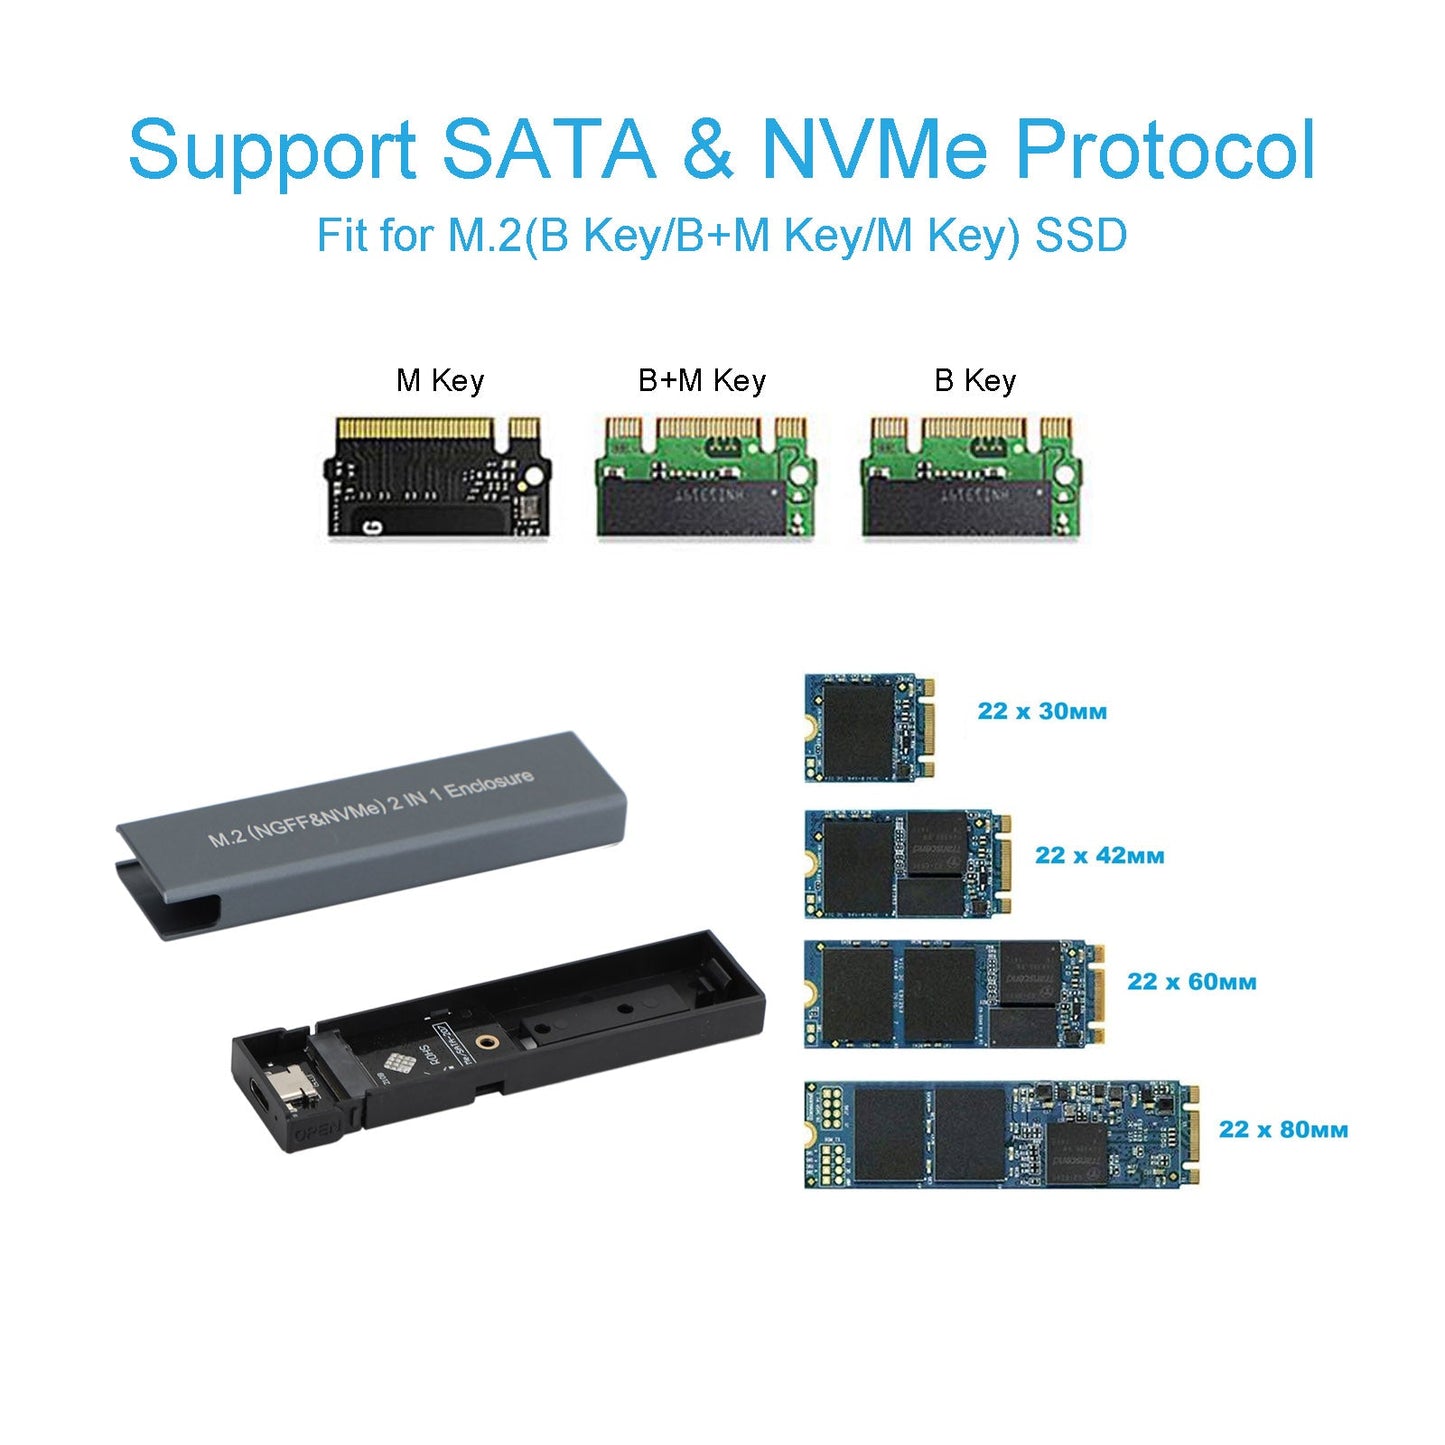 M.2 NVMe SSD zu USB 3.1 Fall Festplatte Dual Protocol M2 NVME Box